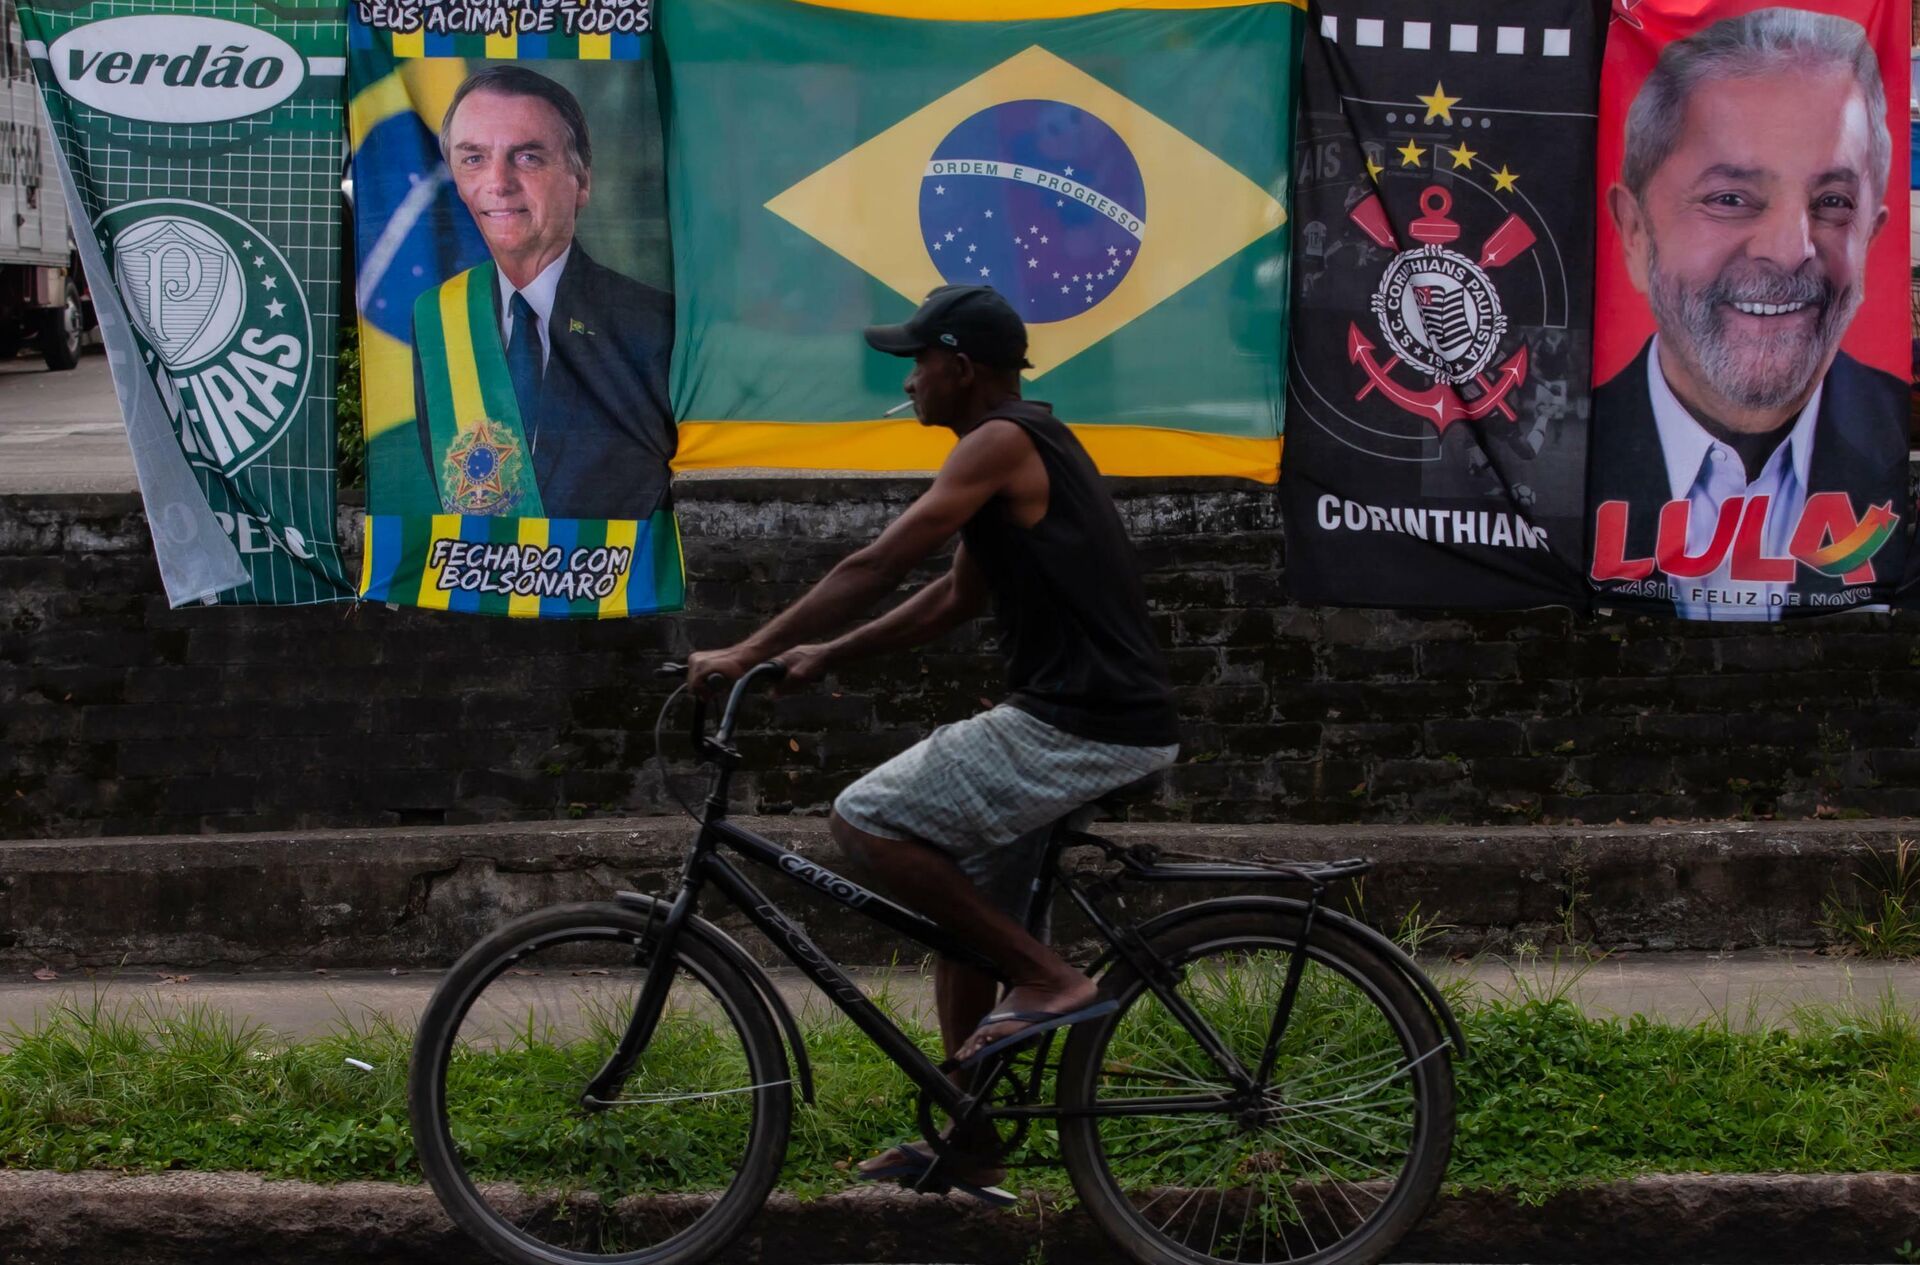 Ambulante vende bandeiras de Jair Bolsonaro e Lula no mesmo varal na cidade de Santos, em São Paulo, em 25 de janeiro de 2022 - Sputnik Brasil, 1920, 02.05.2022